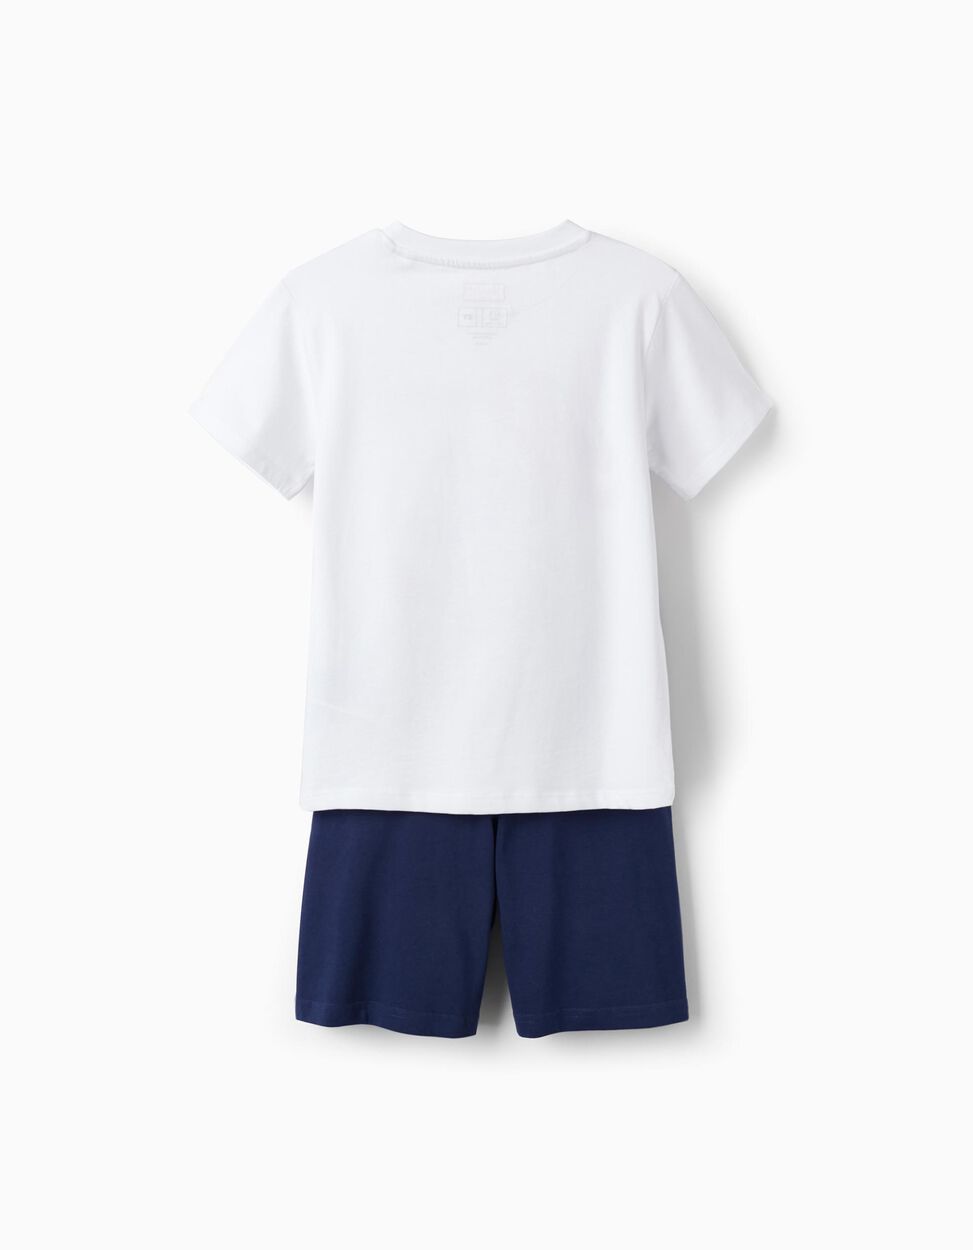 Comprar Online T-Shirt + Calções para Menino 'Capitão América', Branco/Azul